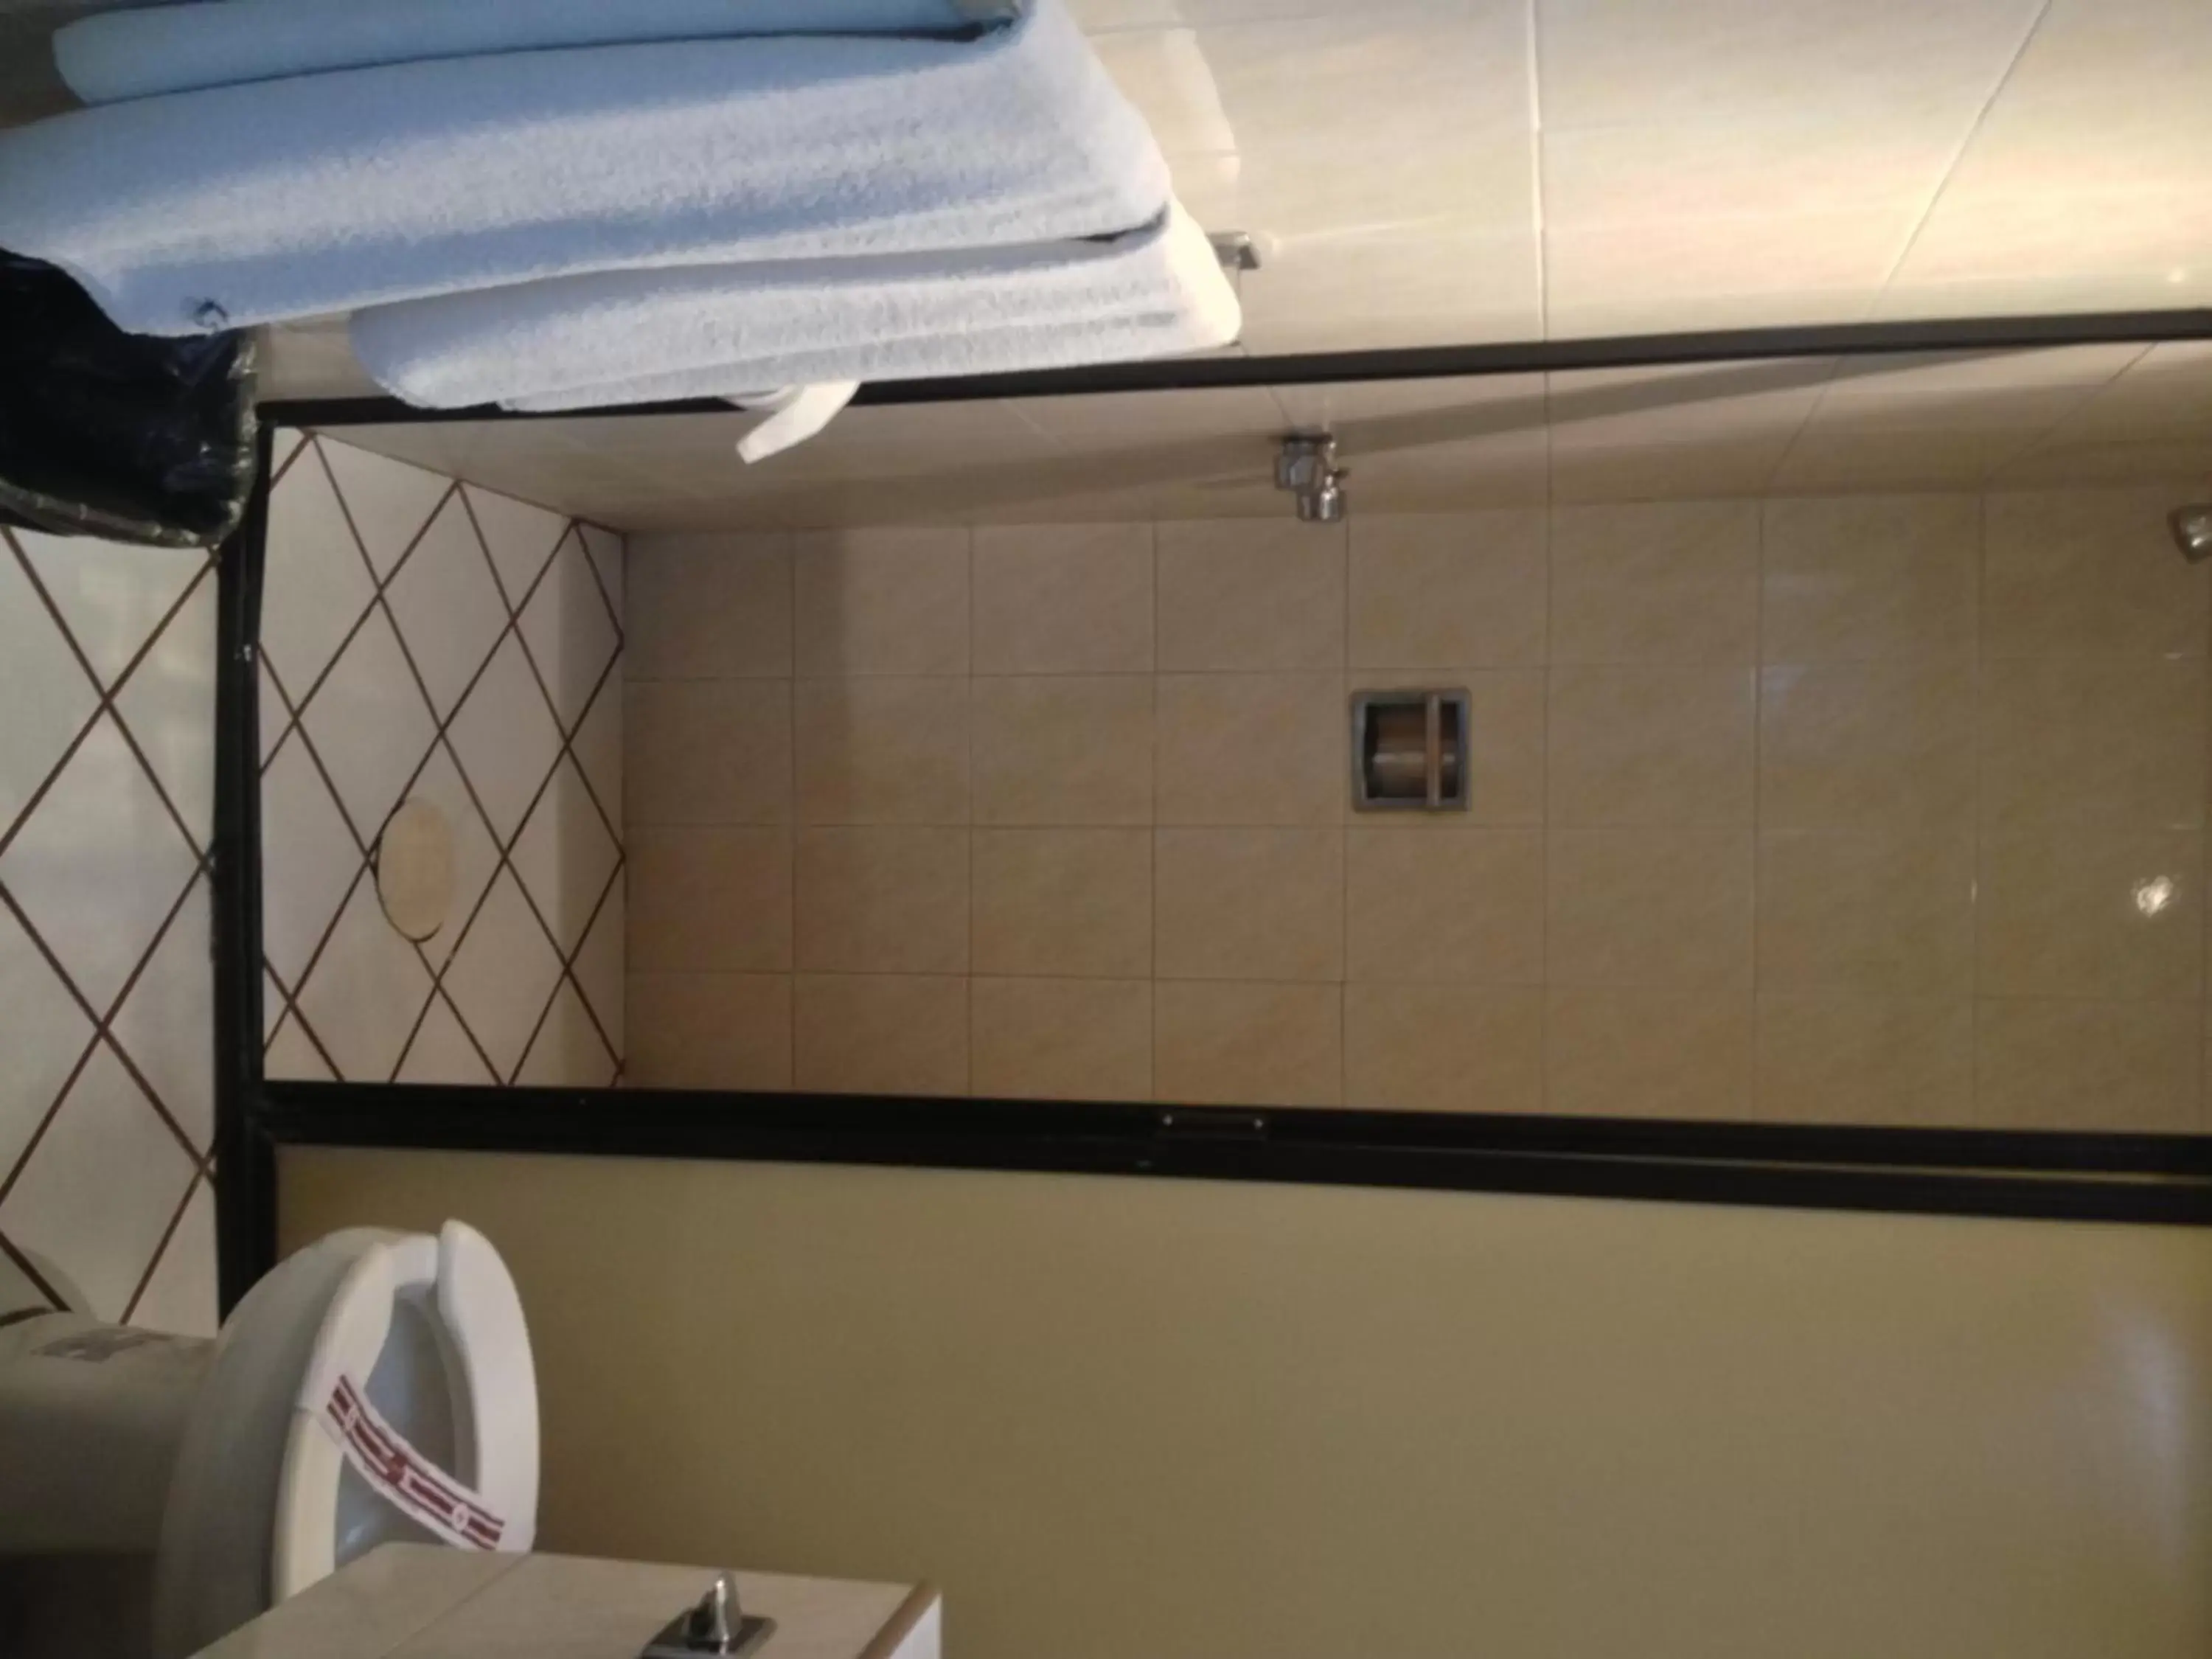 Bathroom in Hotel Nueva Galicia